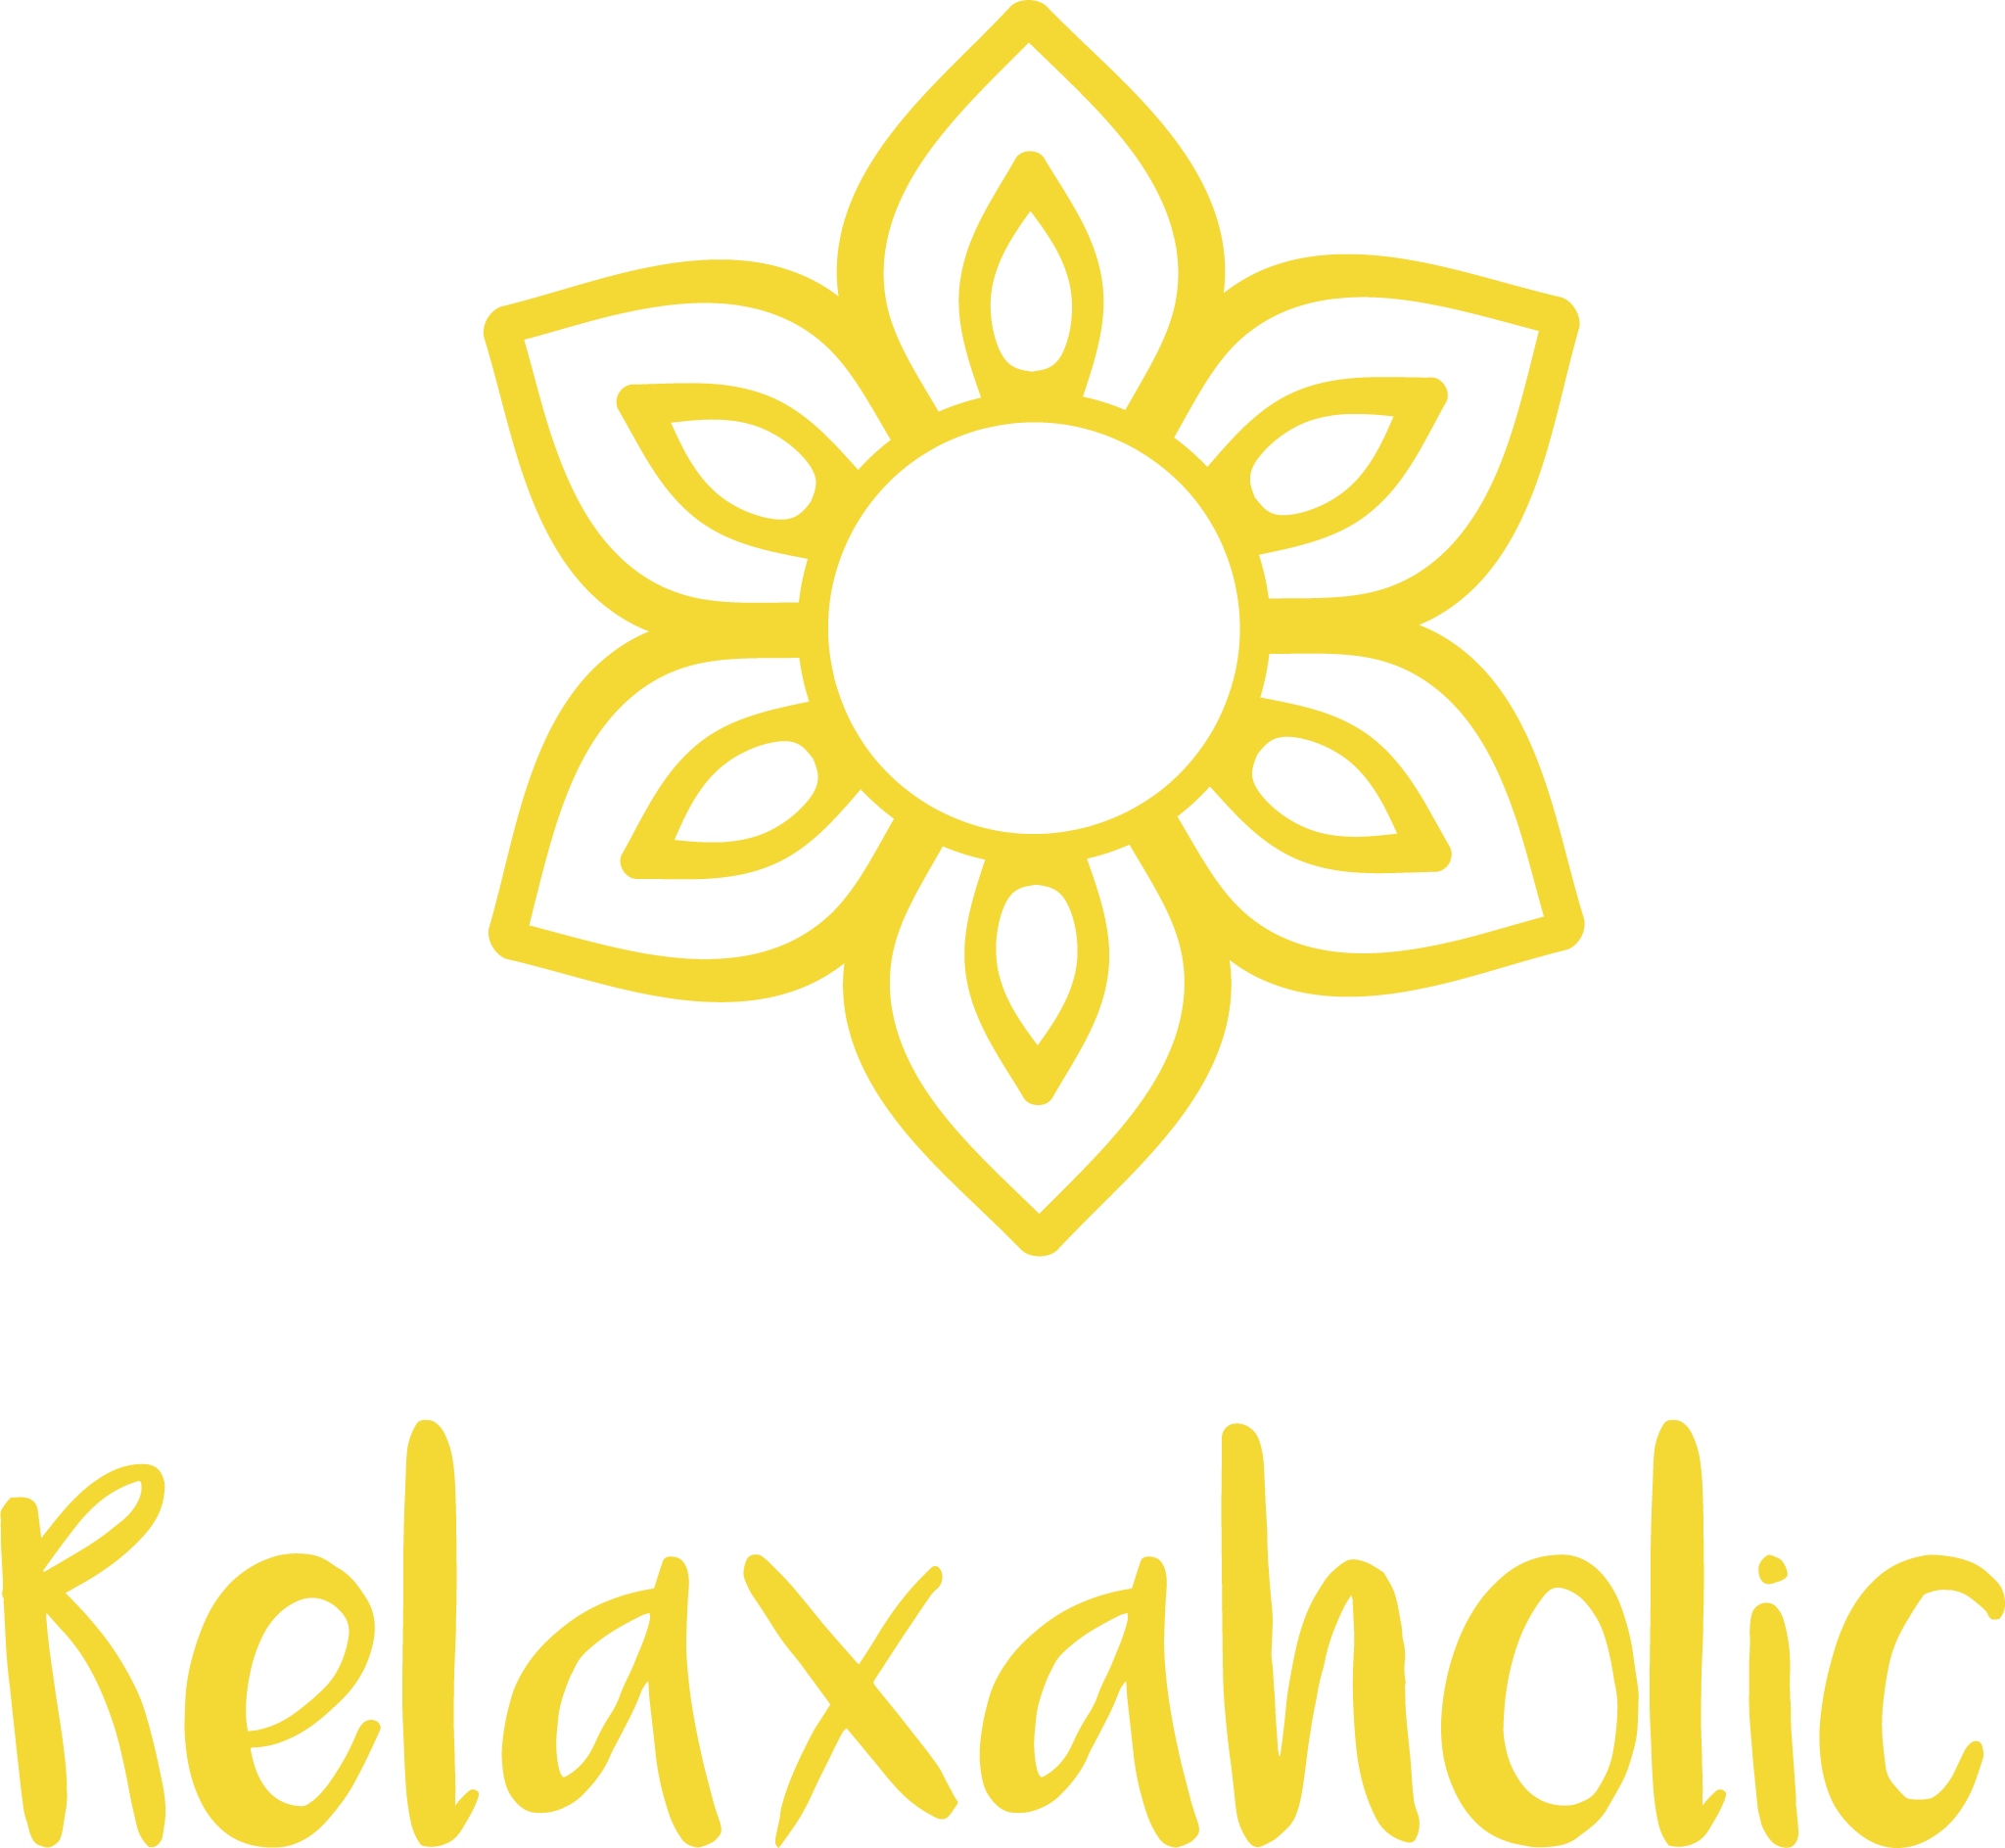 Relaxaholic - Die zentrale Anlaufstelle für mentale Gesundheit am digitalen Arbeitsplatz. Logo